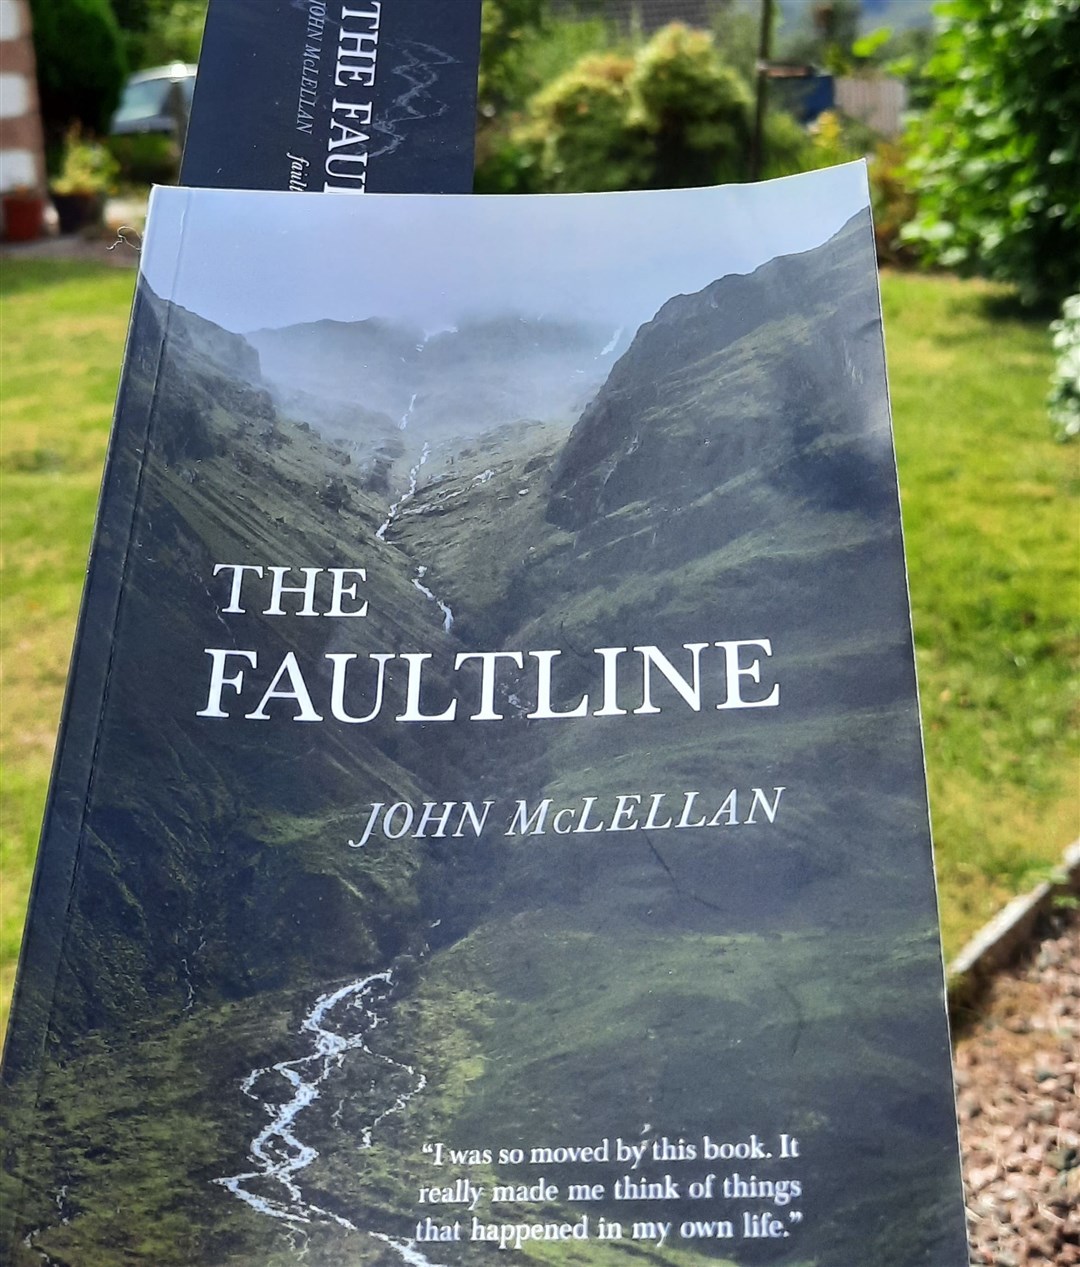 The Faultline by John McLellan